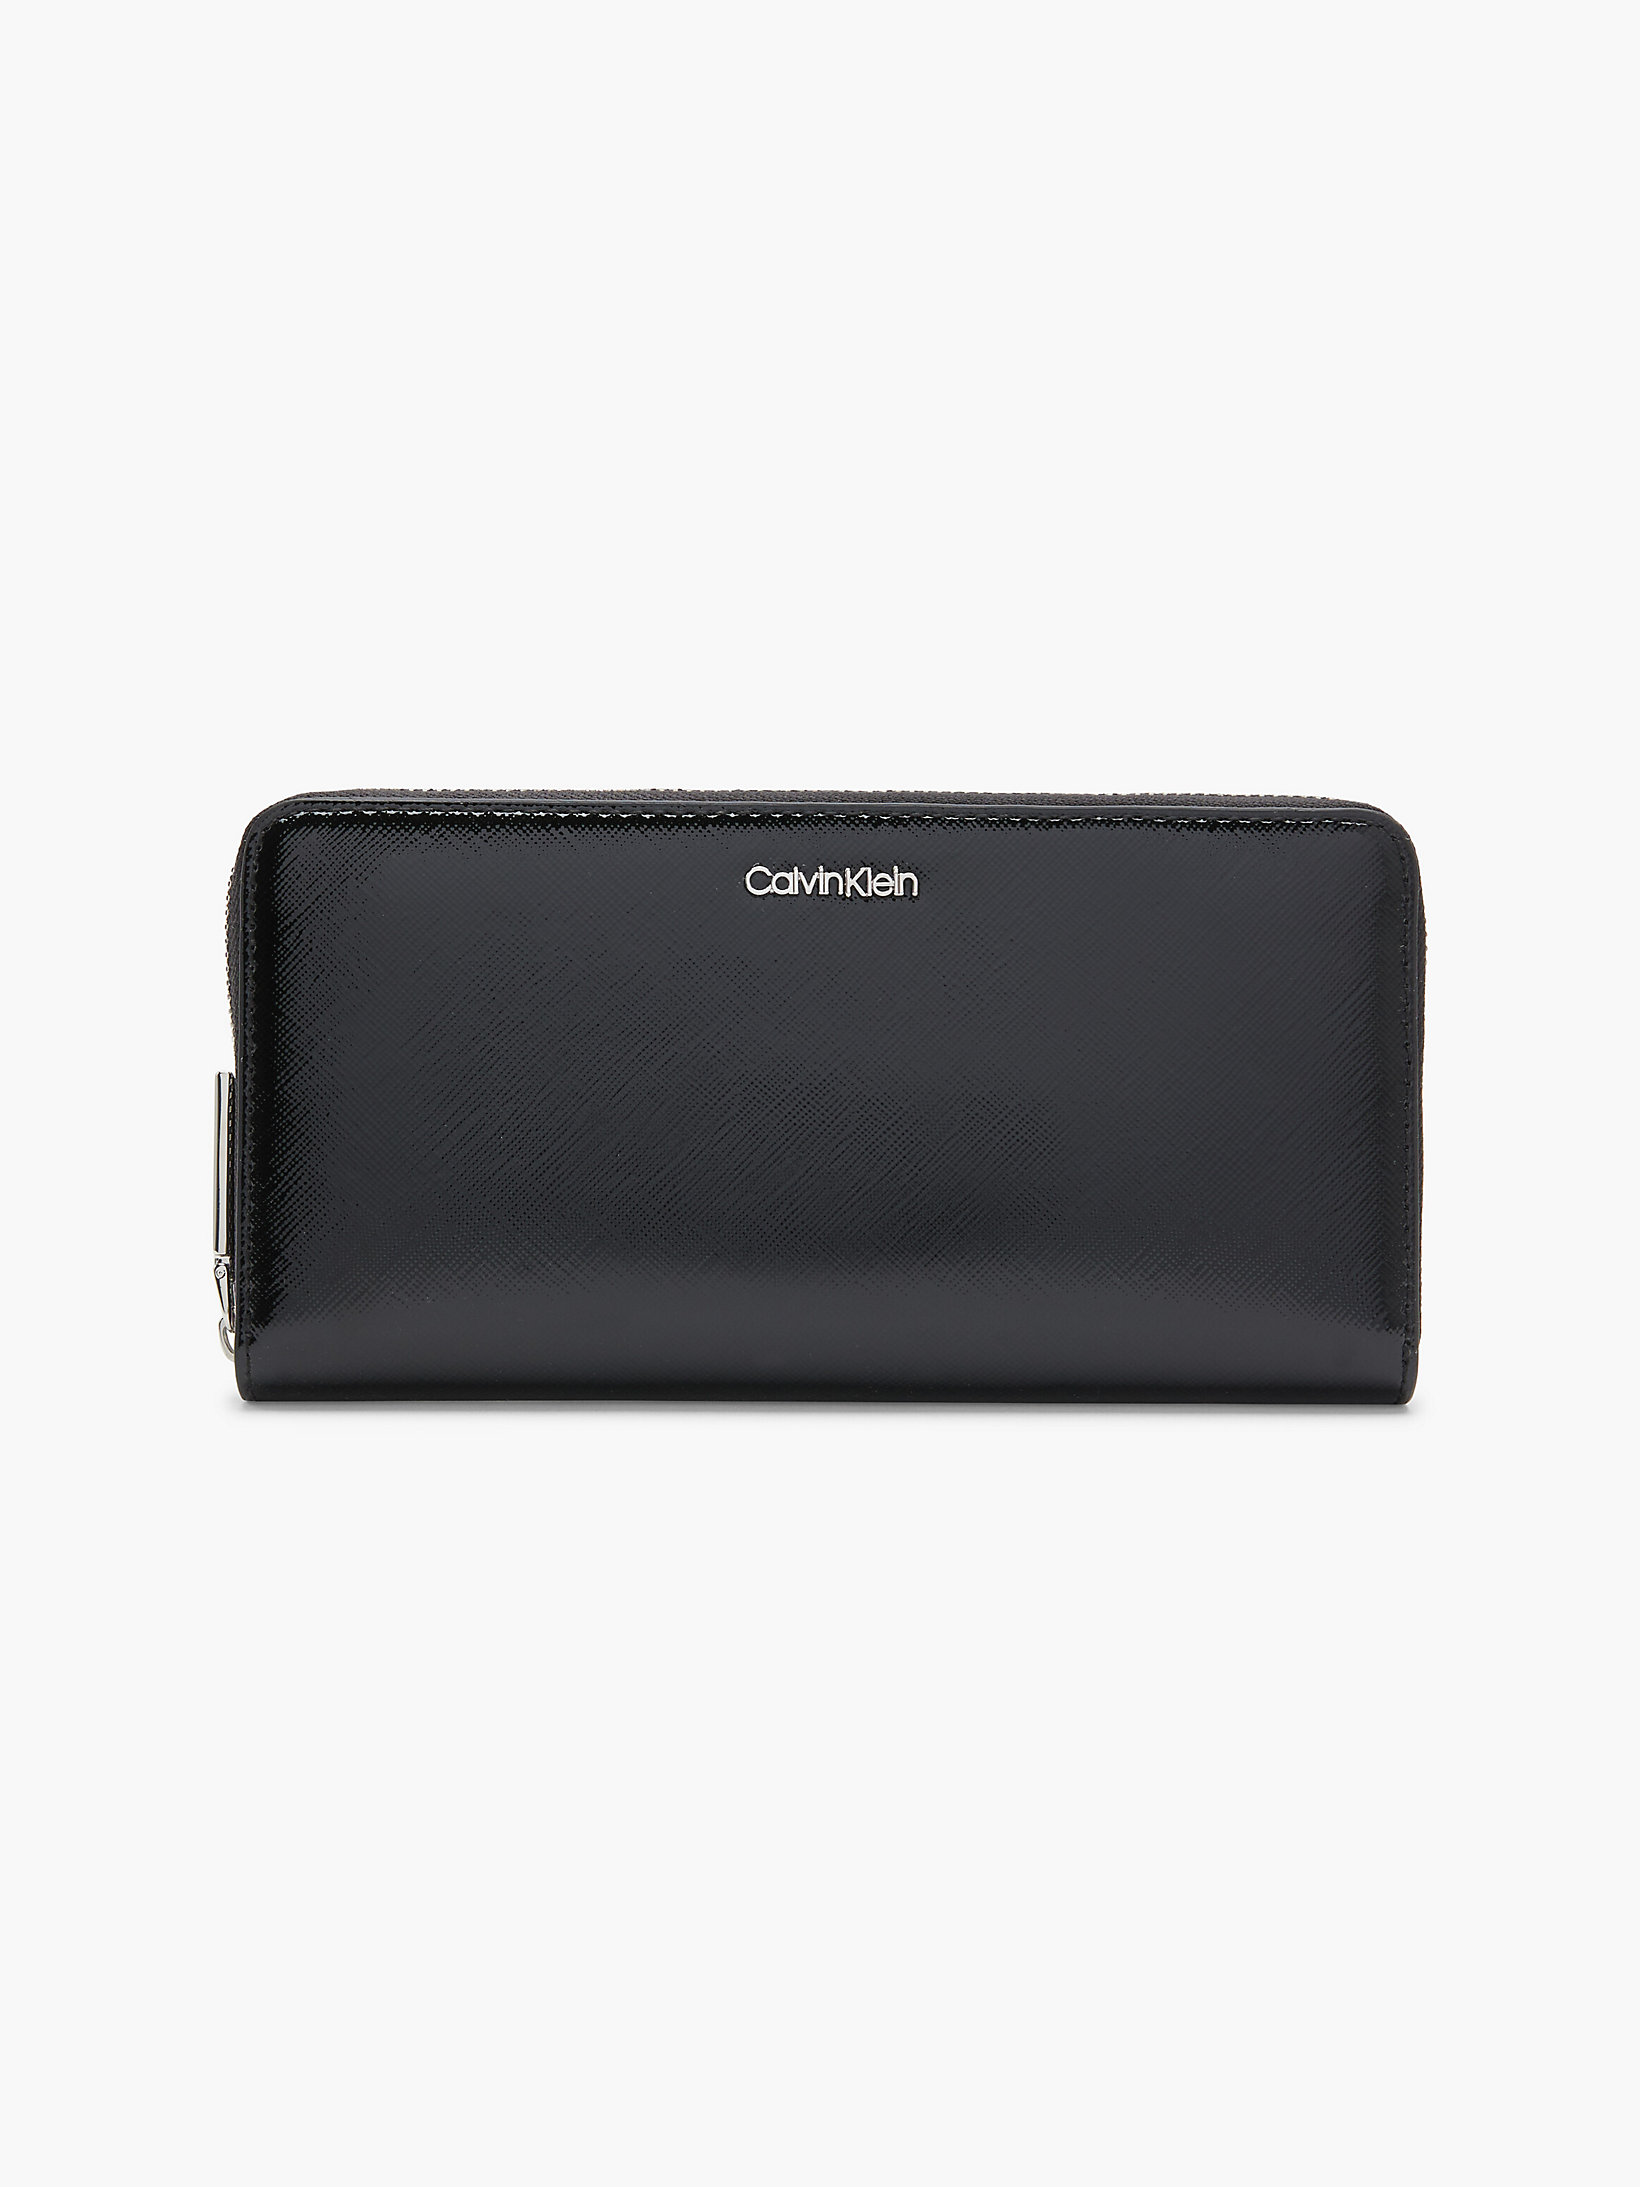 CK Black Large Zip Around Wallet undefined women Calvin Klein